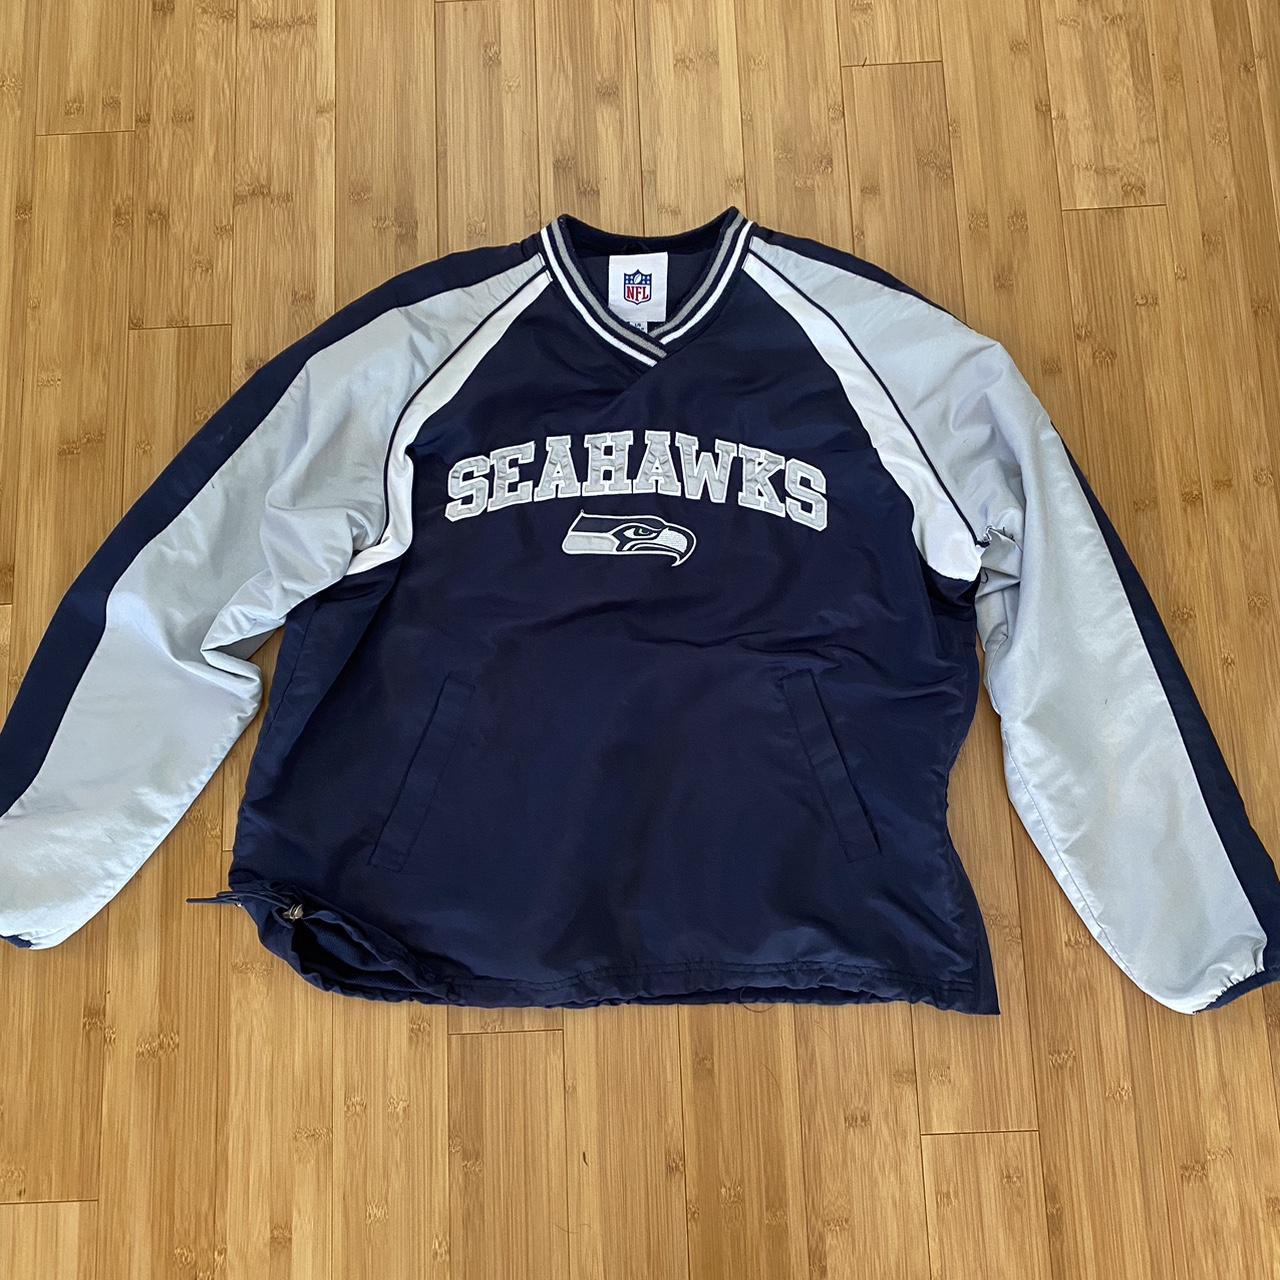 vintage seahawks sweatshirt